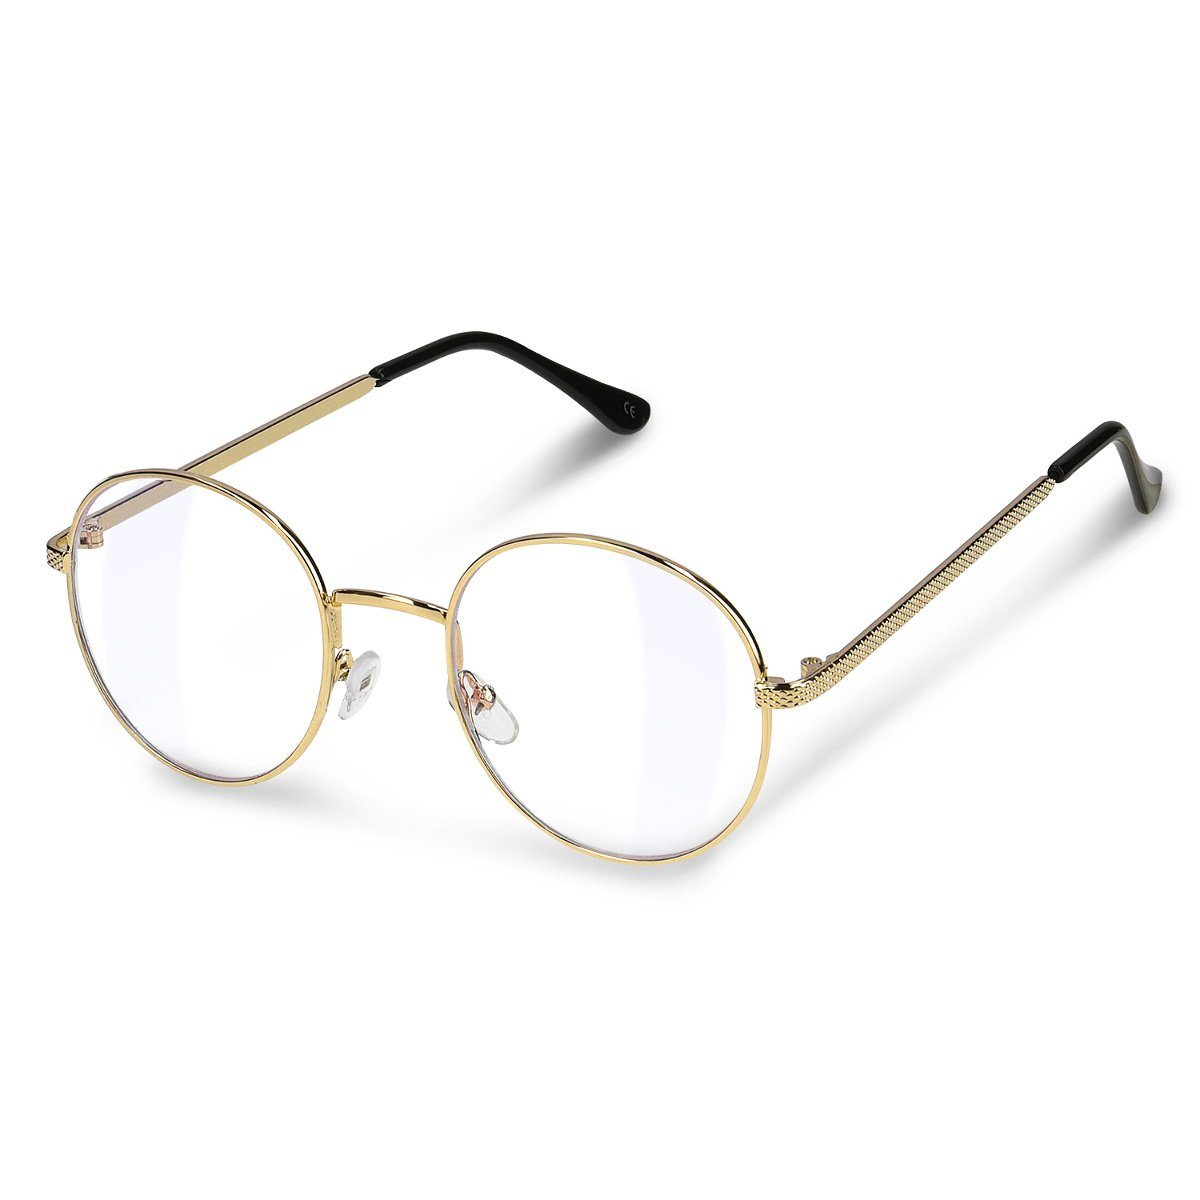 Retro Brille ohne stärke Student Slim-Brille Damen Herren Nerdbrille Linsen Brillenfassung clear lens Dekobrillen modisch rund Streberbrille Strahlenschutz lesebrille für Computer PC mit Brillenetui 